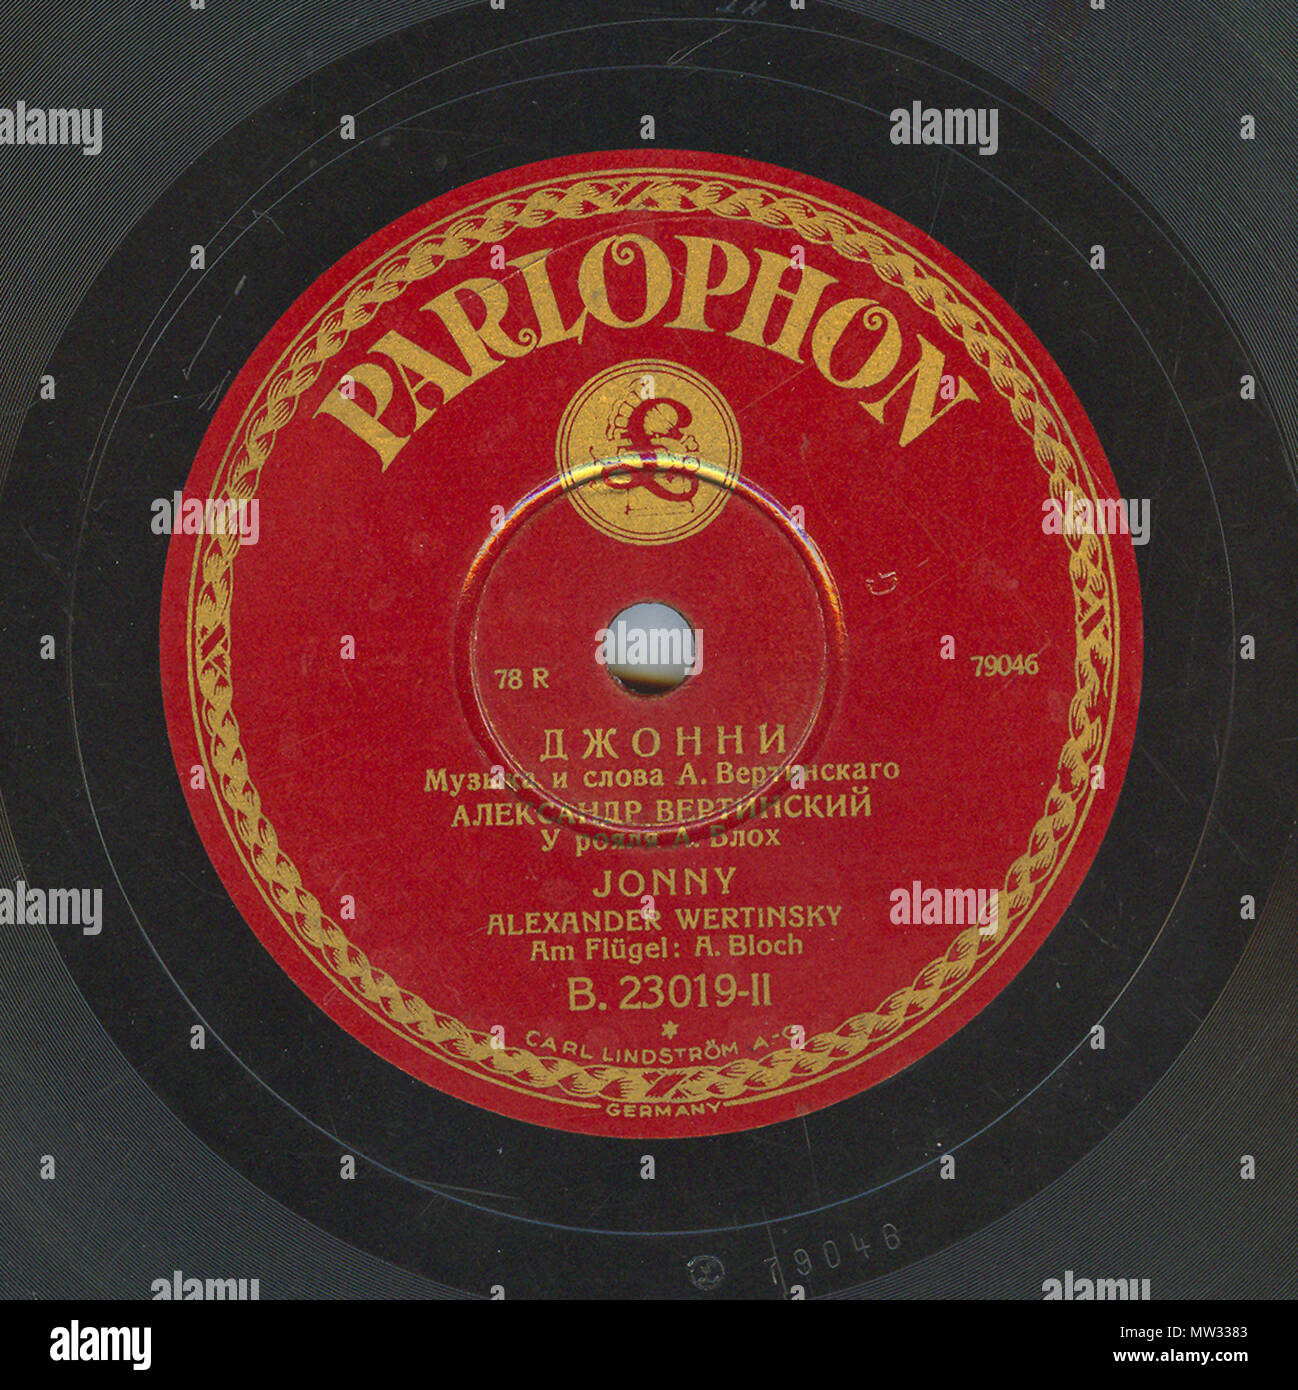 . Englisch: Vertinsky Parlophone B. 23019 02. 6. April 2010, 12:01:55. Parlophone 629 Vertinsky Parlophone B. 23019, 02. Stockfoto